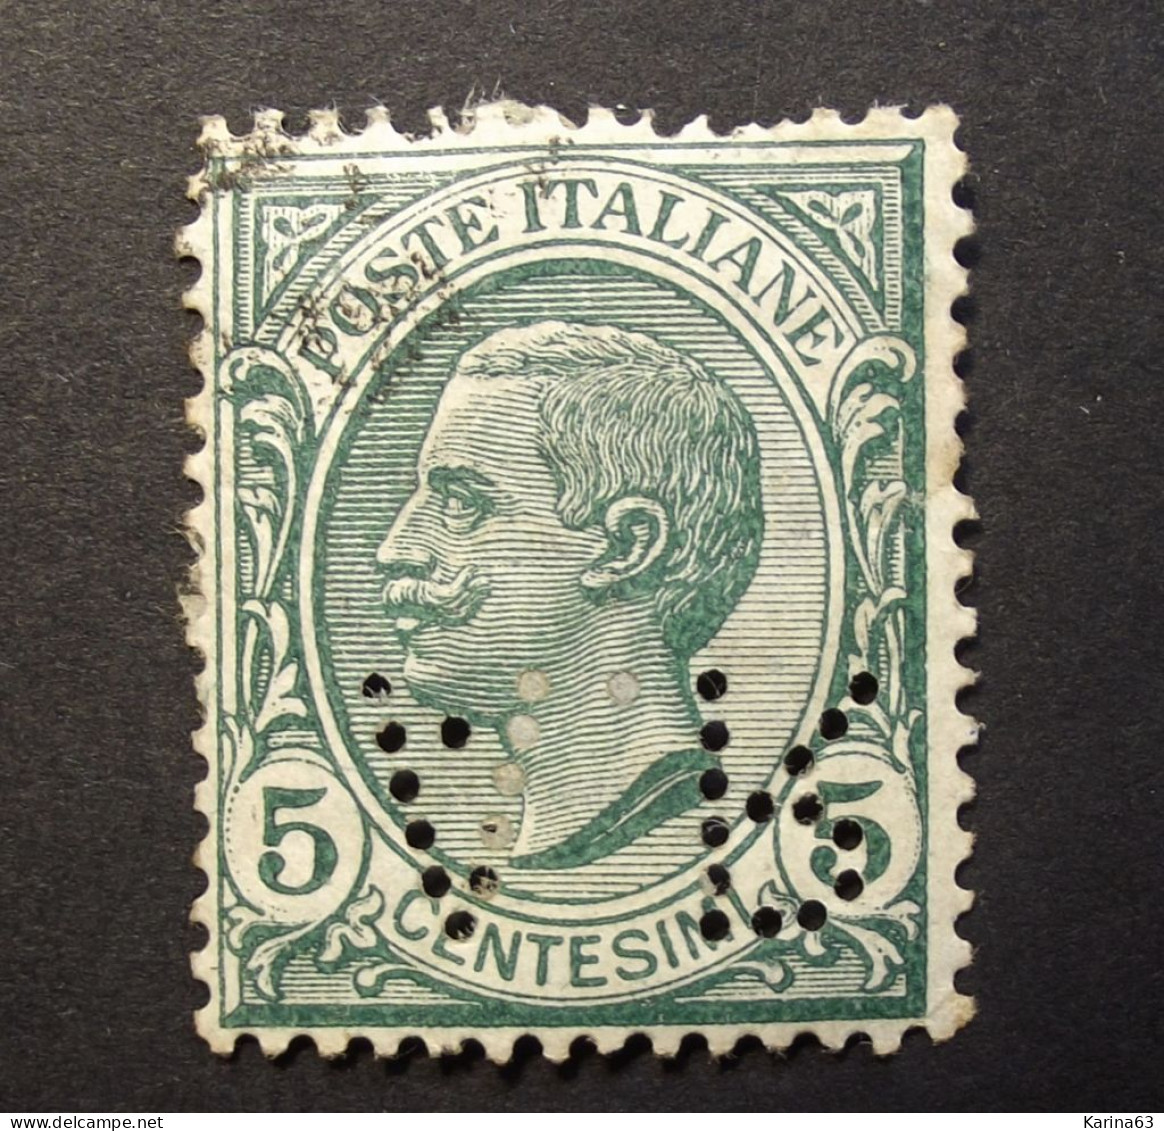 Italia - Italy - 1906 -  Perfin - Lochung -  A R -  A.Rejna - Milano  -  Cancelled - Usados